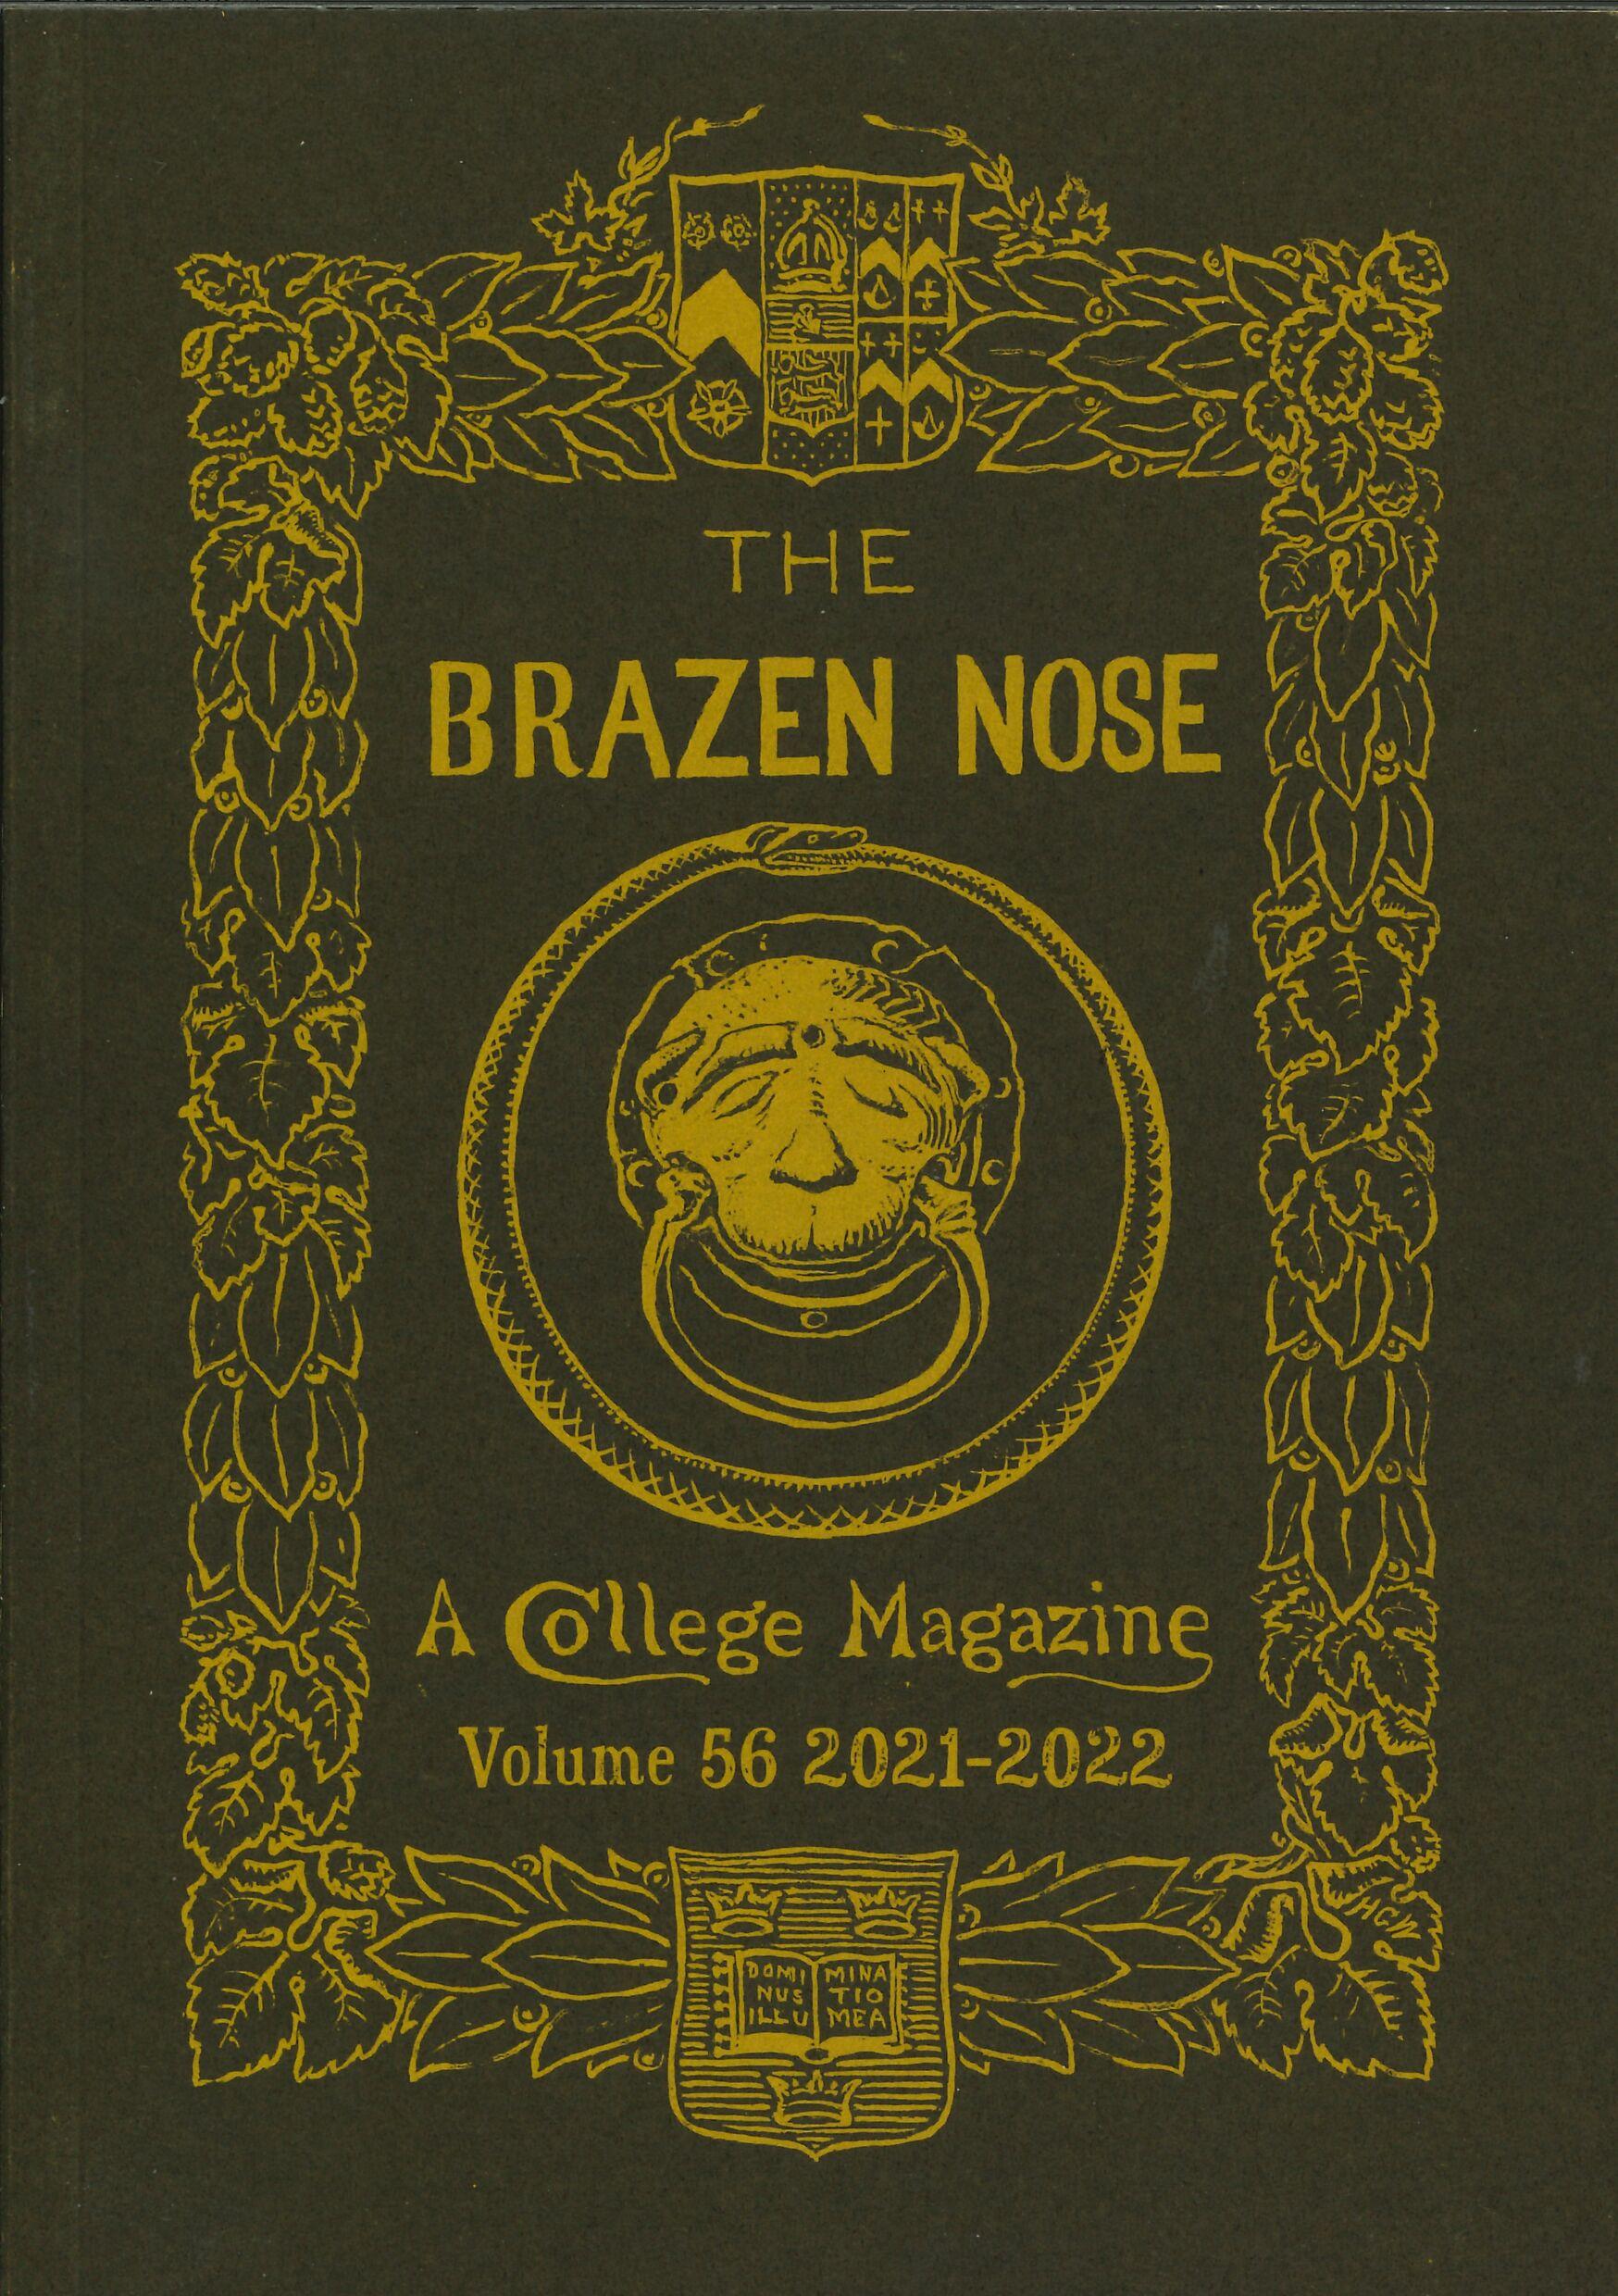 Brazen Nose Vol 56 2021 2022 cover